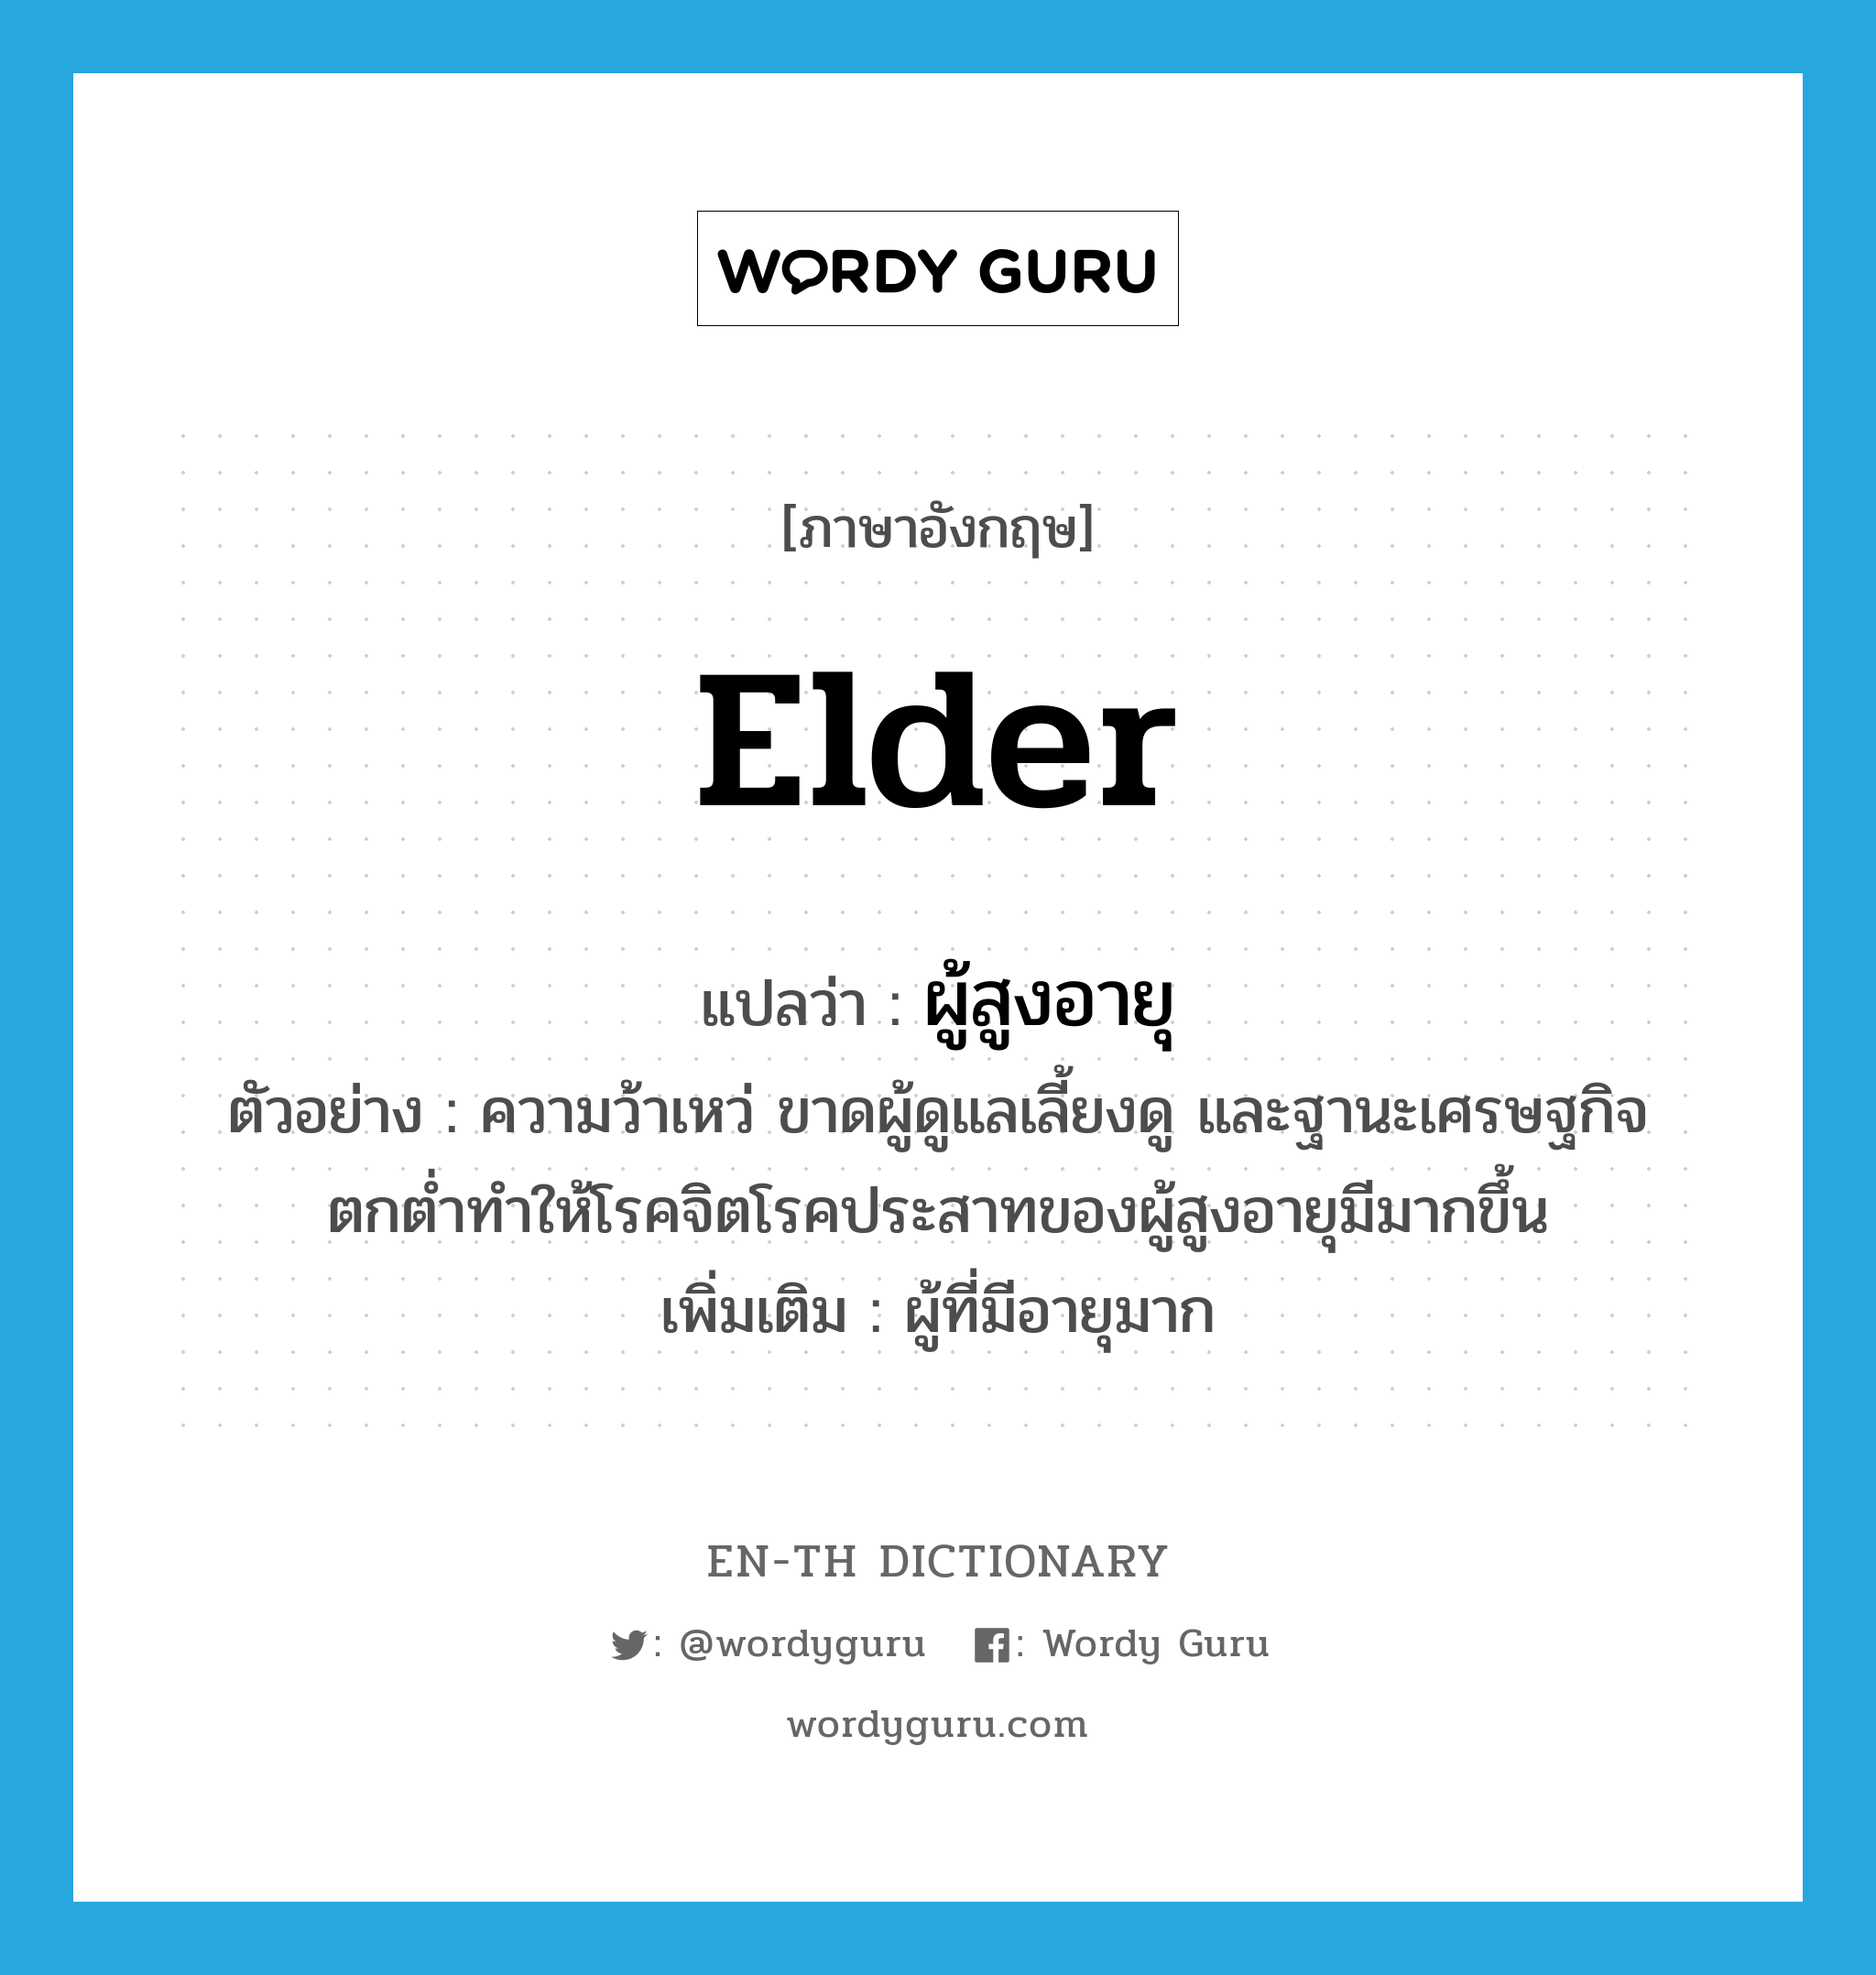 elder แปลว่า?, คำศัพท์ภาษาอังกฤษ elder แปลว่า ผู้สูงอายุ ประเภท N ตัวอย่าง ความว้าเหว่ ขาดผู้ดูแลเลี้ยงดู และฐานะเศรษฐกิจตกต่ำทำให้โรคจิตโรคประสาทของผู้สูงอายุมีมากขึ้น เพิ่มเติม ผู้ที่มีอายุมาก หมวด N